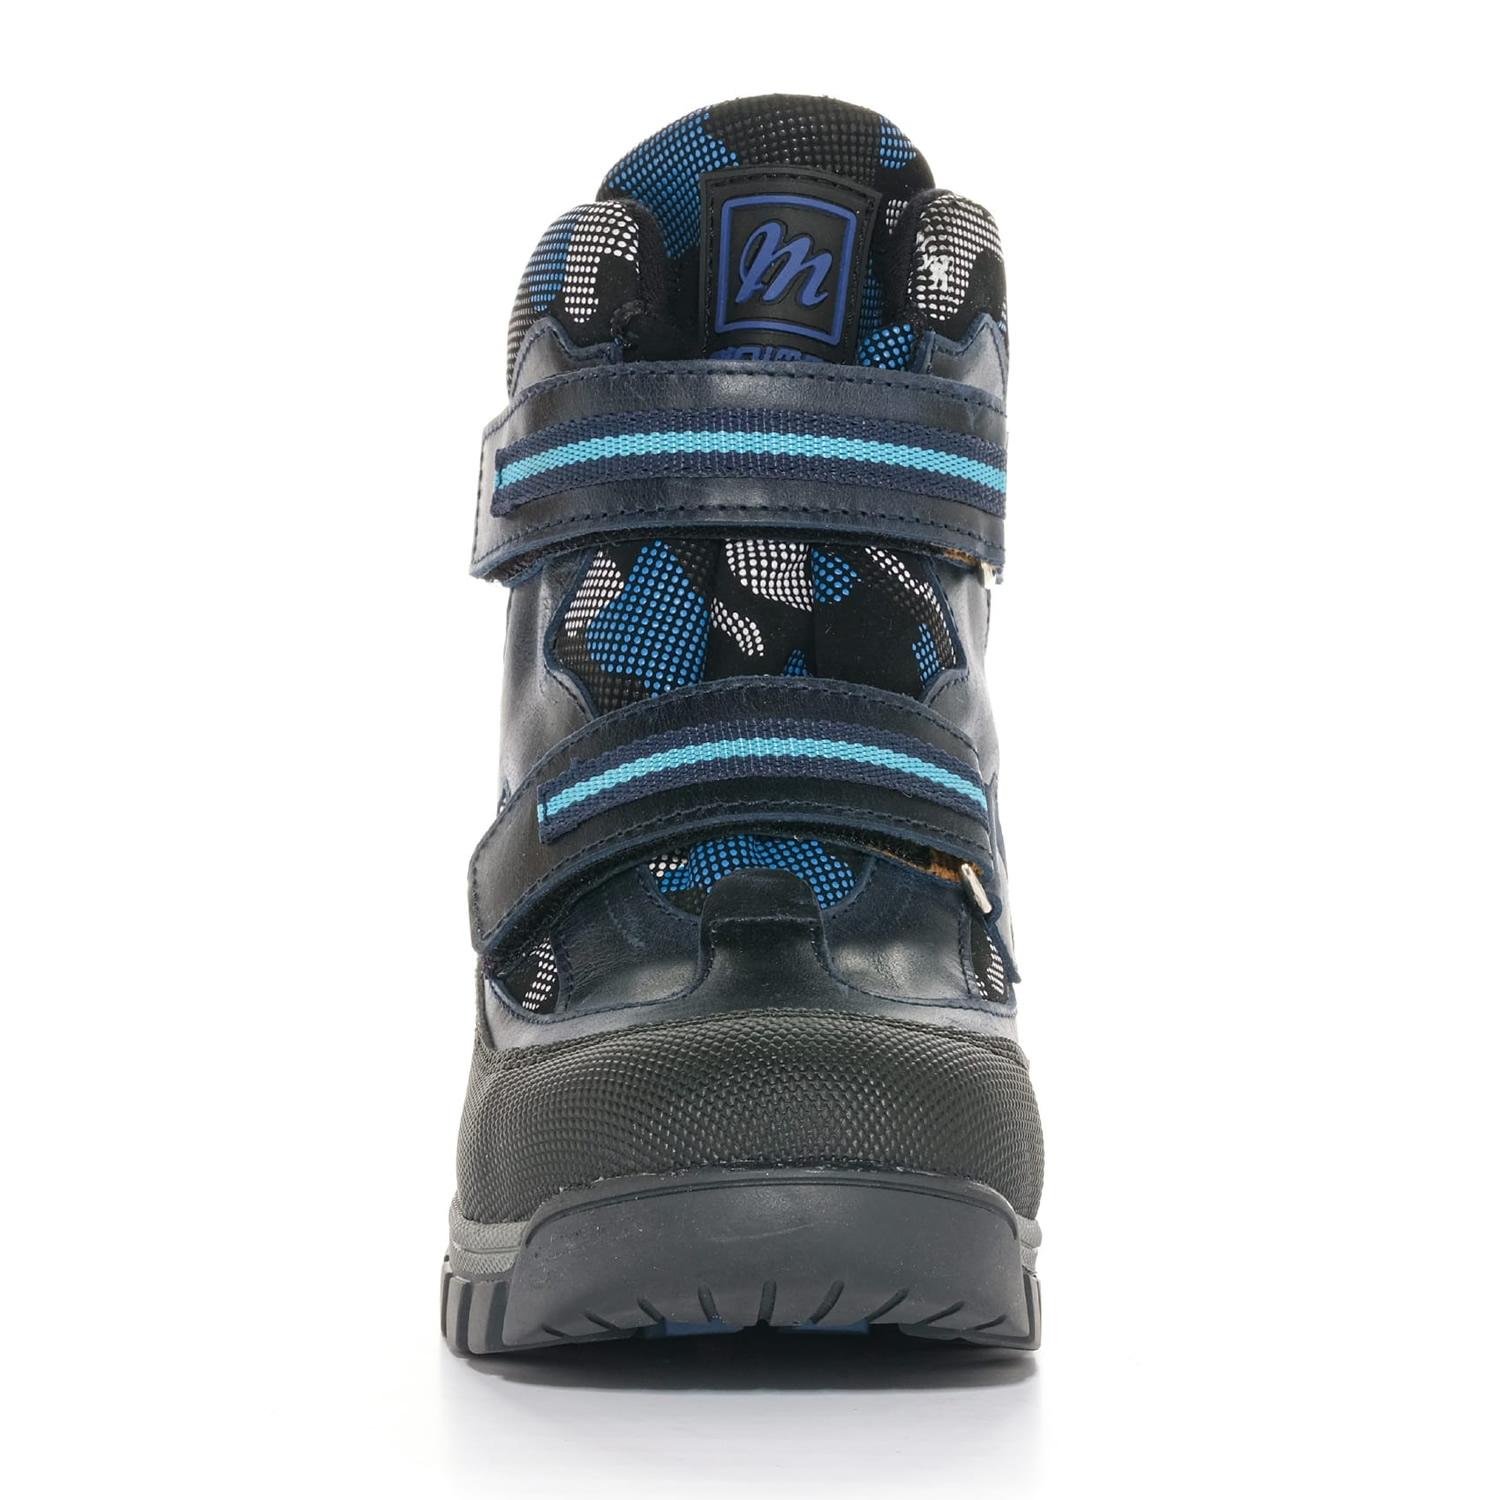 Зимові черевики для хлопчика, чорно-сині 21 розміру (1659-62-20B-06, 1659-63-20B-06, 1659-64-20B-06), Мinimen (мінім)